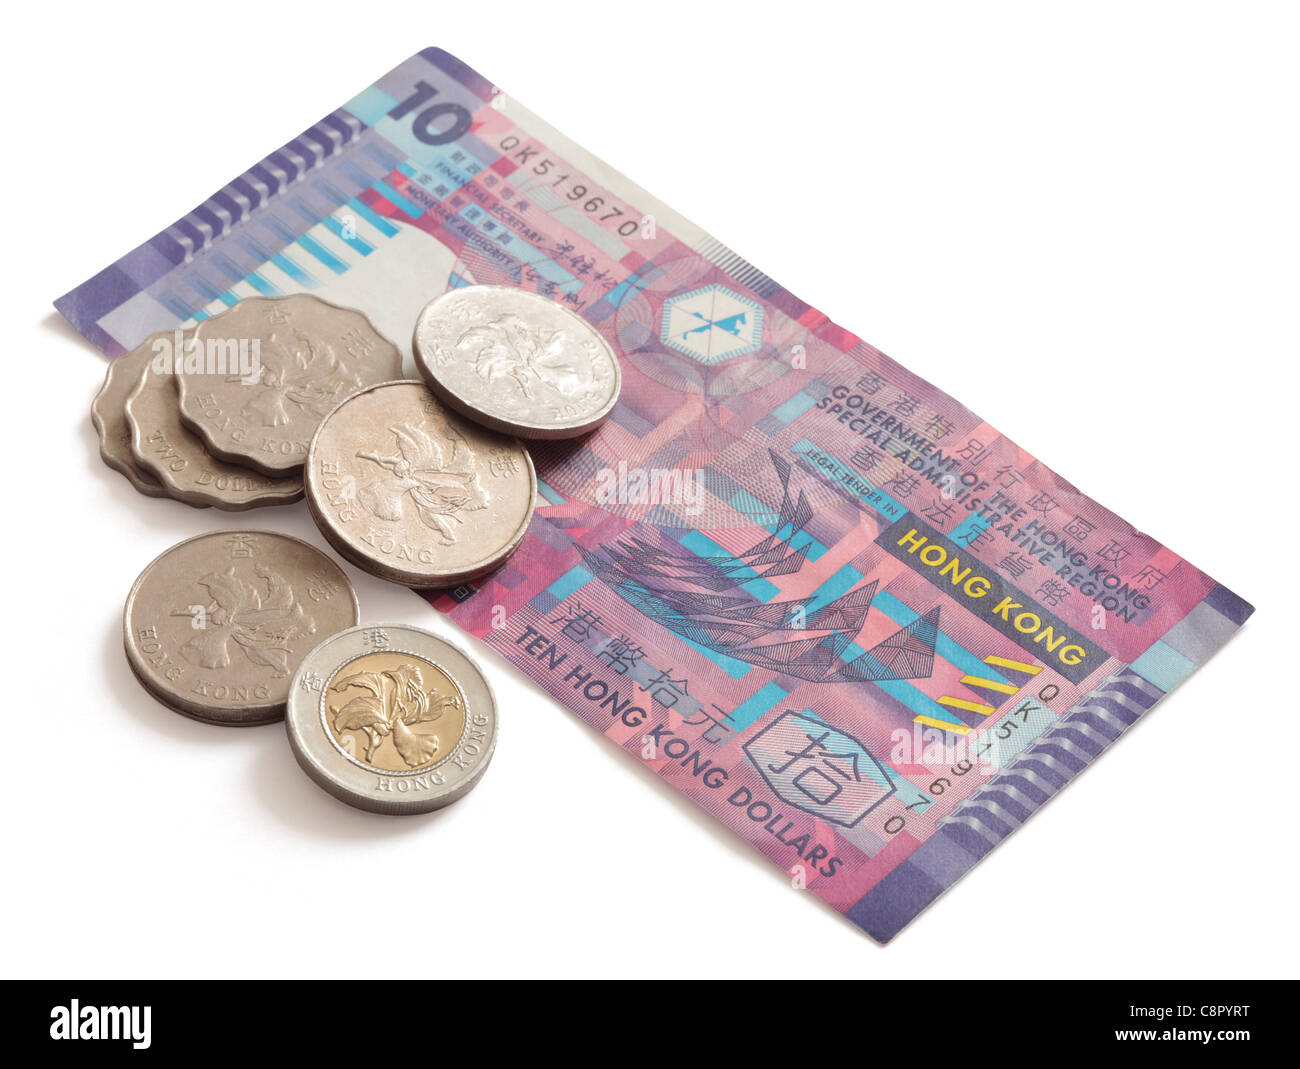 Hong Kong 10 Dollar banknote and coins Stock Photo